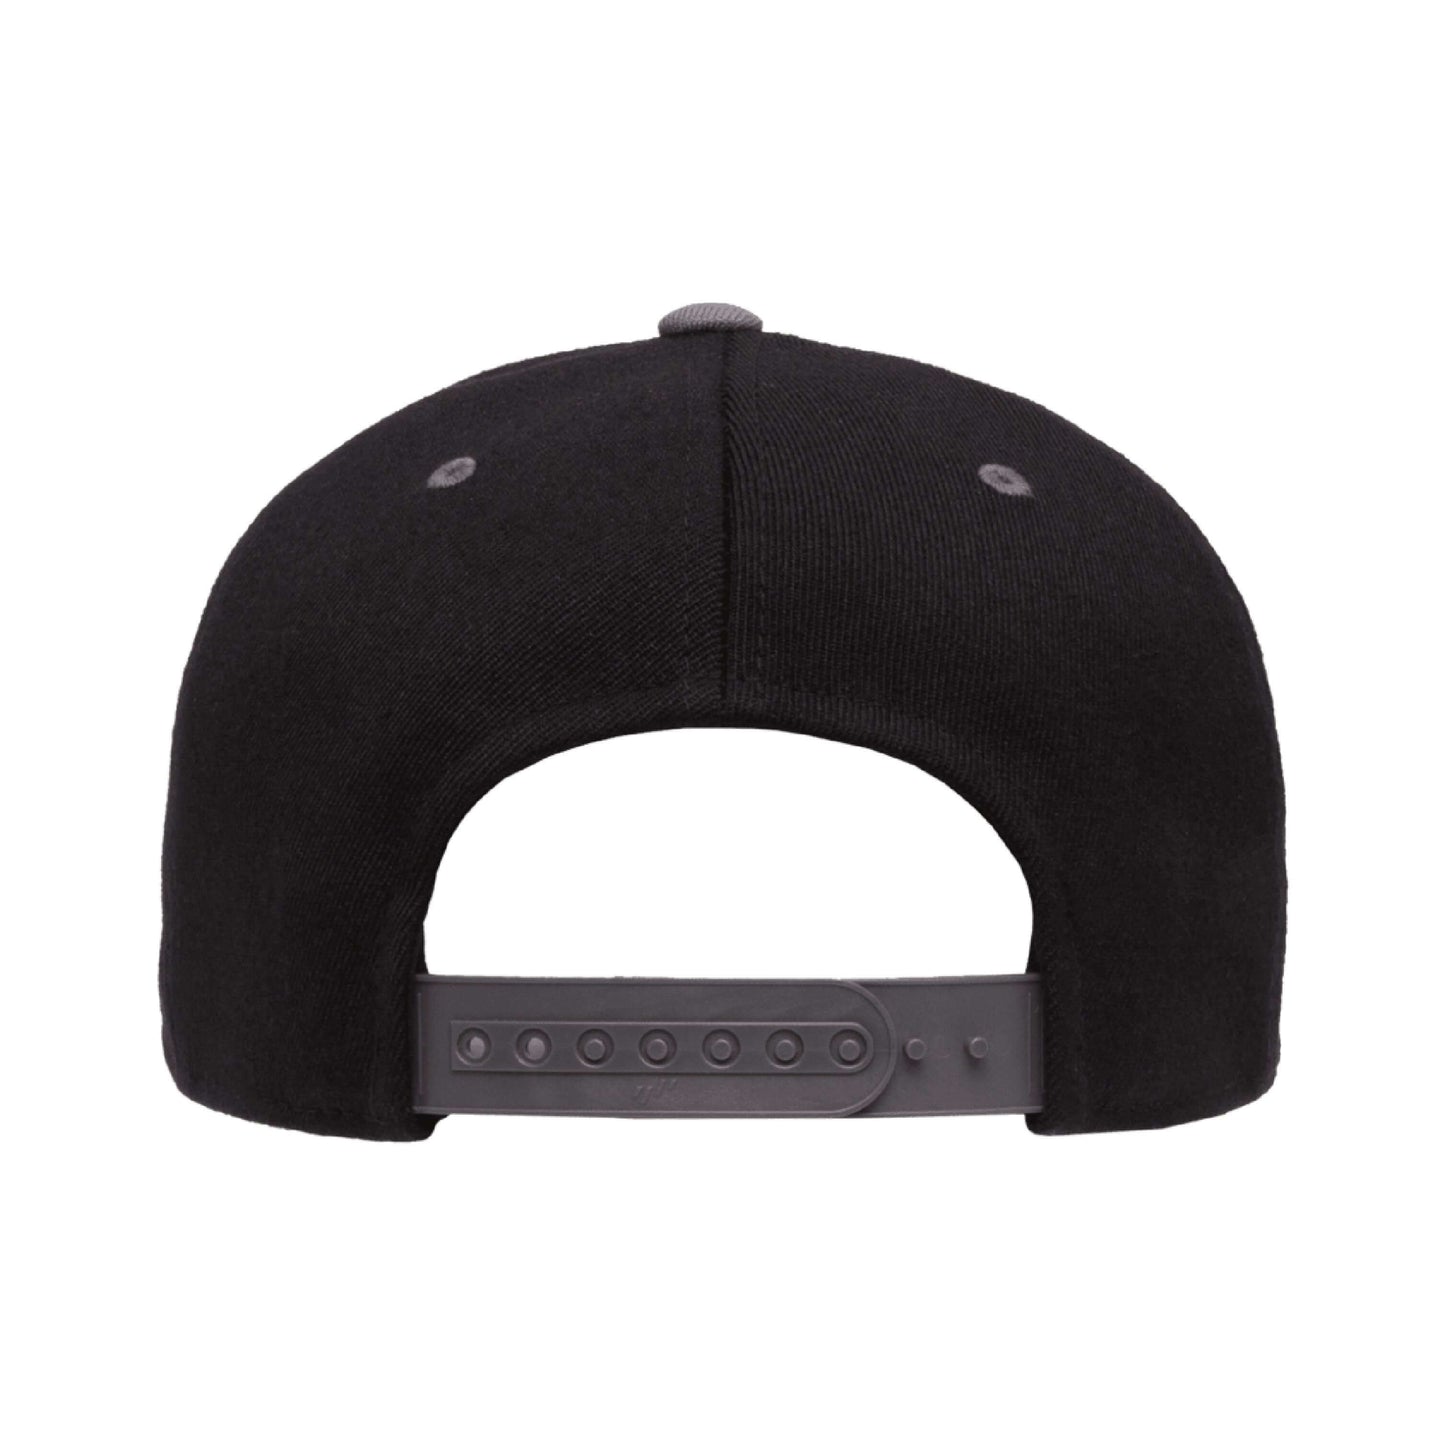 Flexfit 110 Premium Snapback Cap